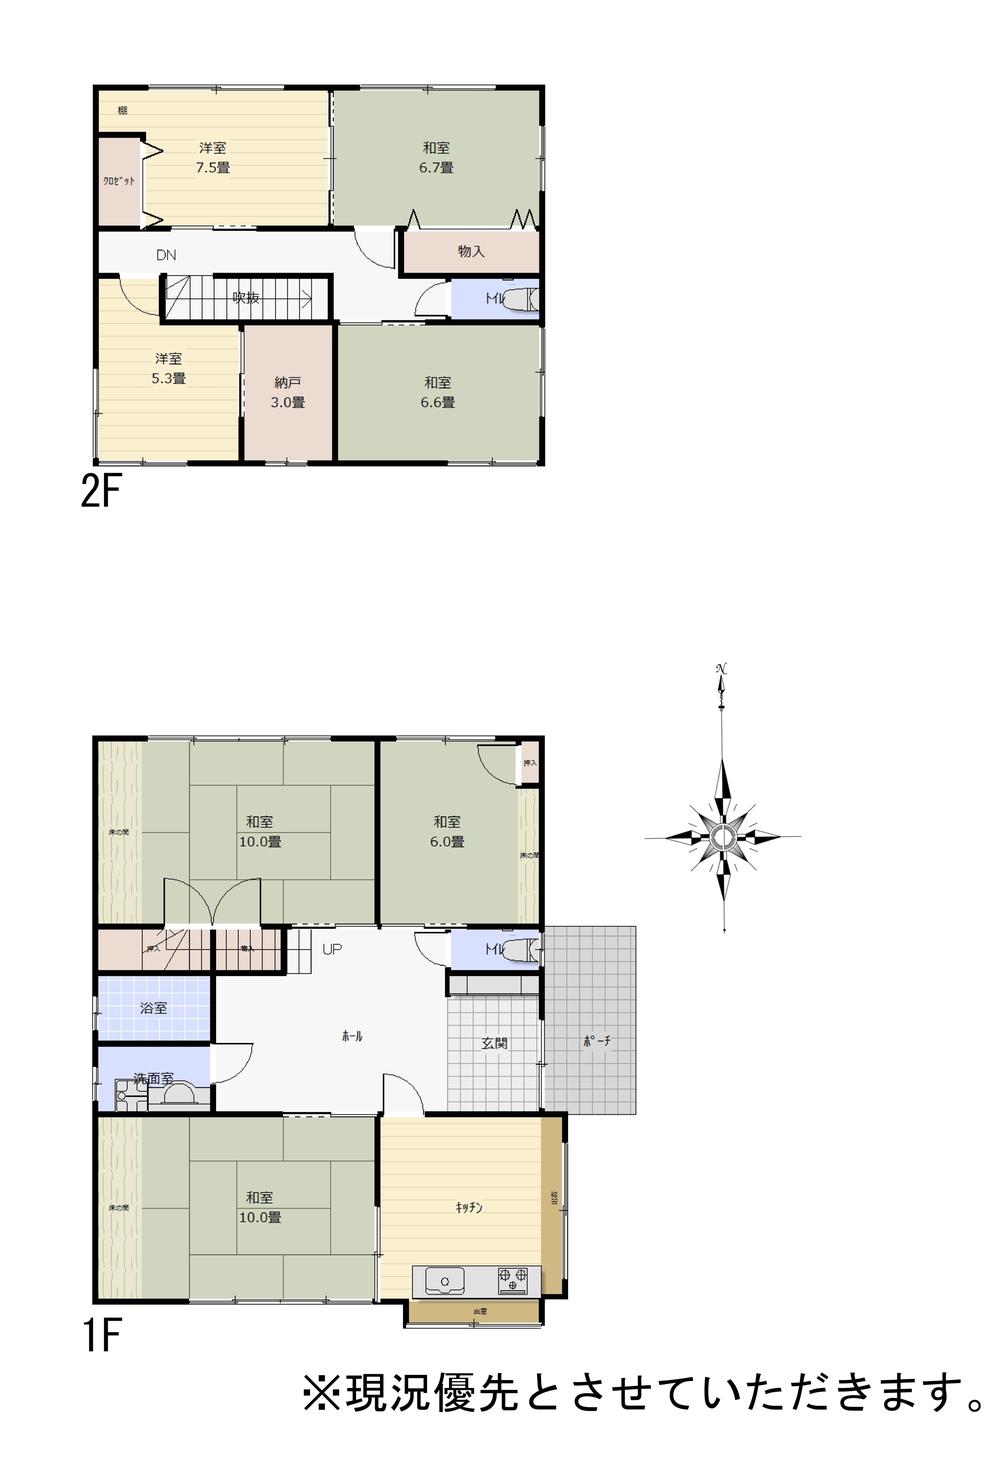 Floor plan. 17,900,000 yen, 6LDK + S (storeroom), Land area 209.27 sq m , Building area 150.71 sq m